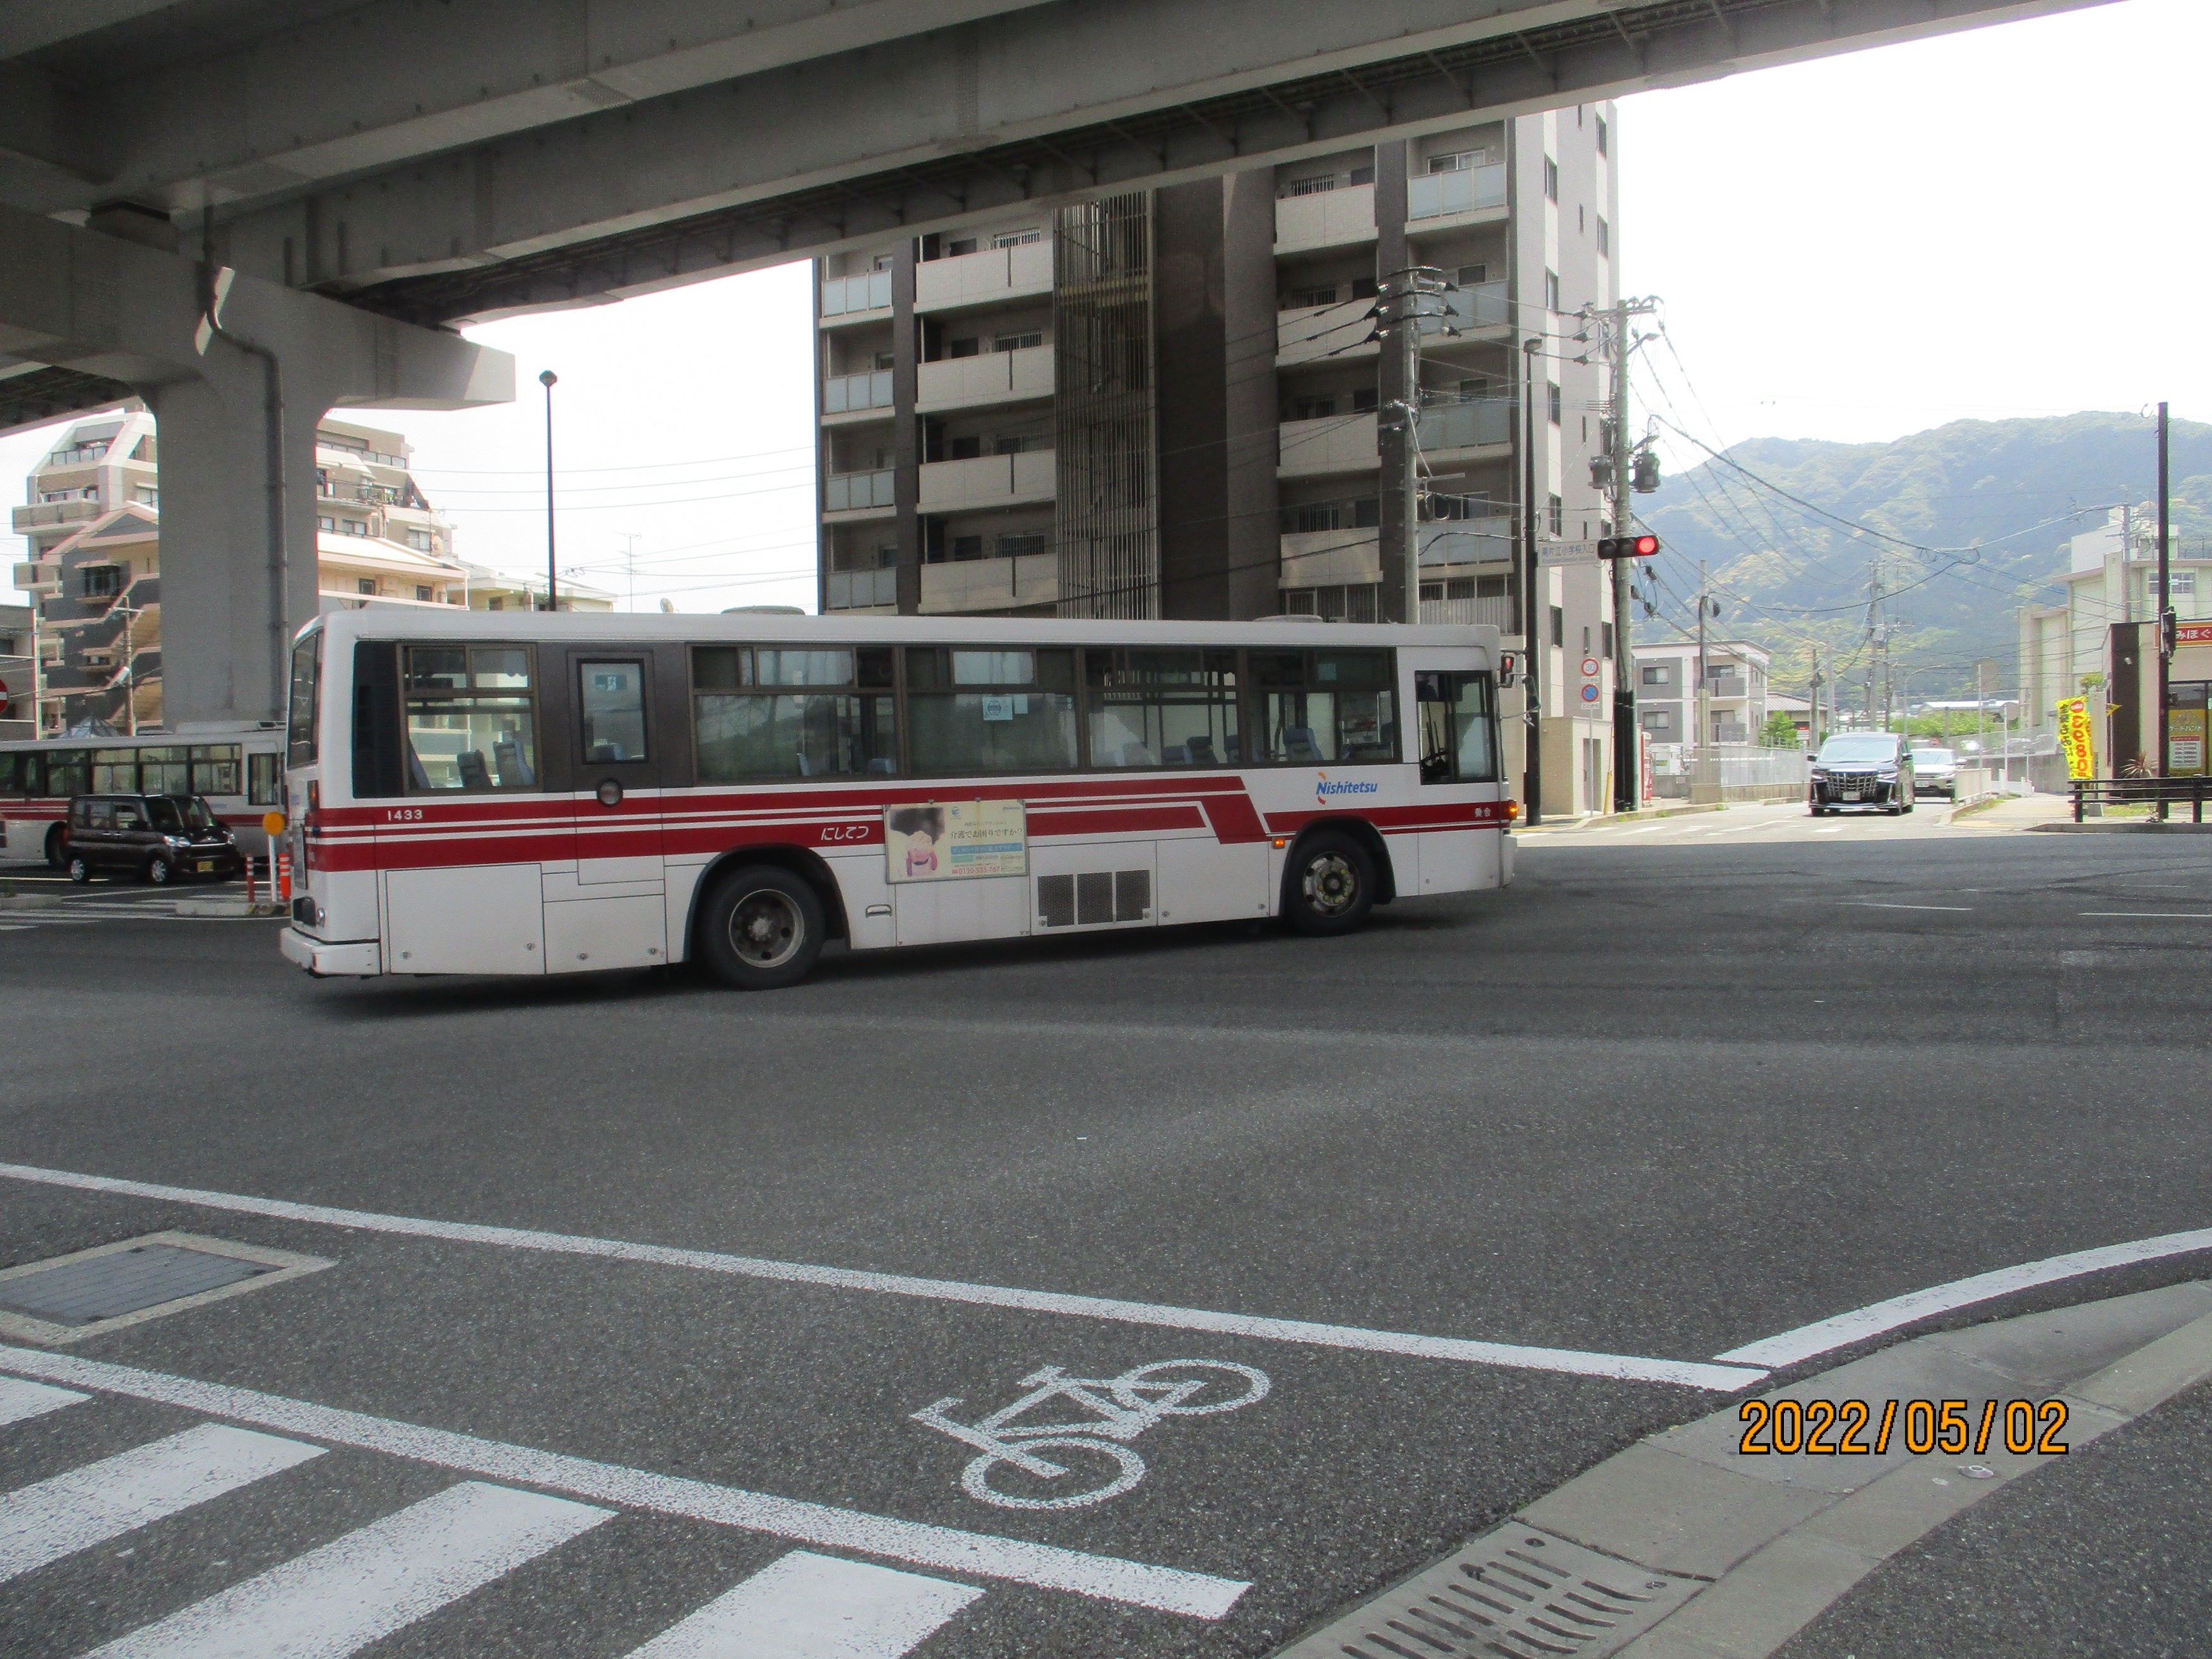 西鉄バス 1433号車 | 303-101のブログ